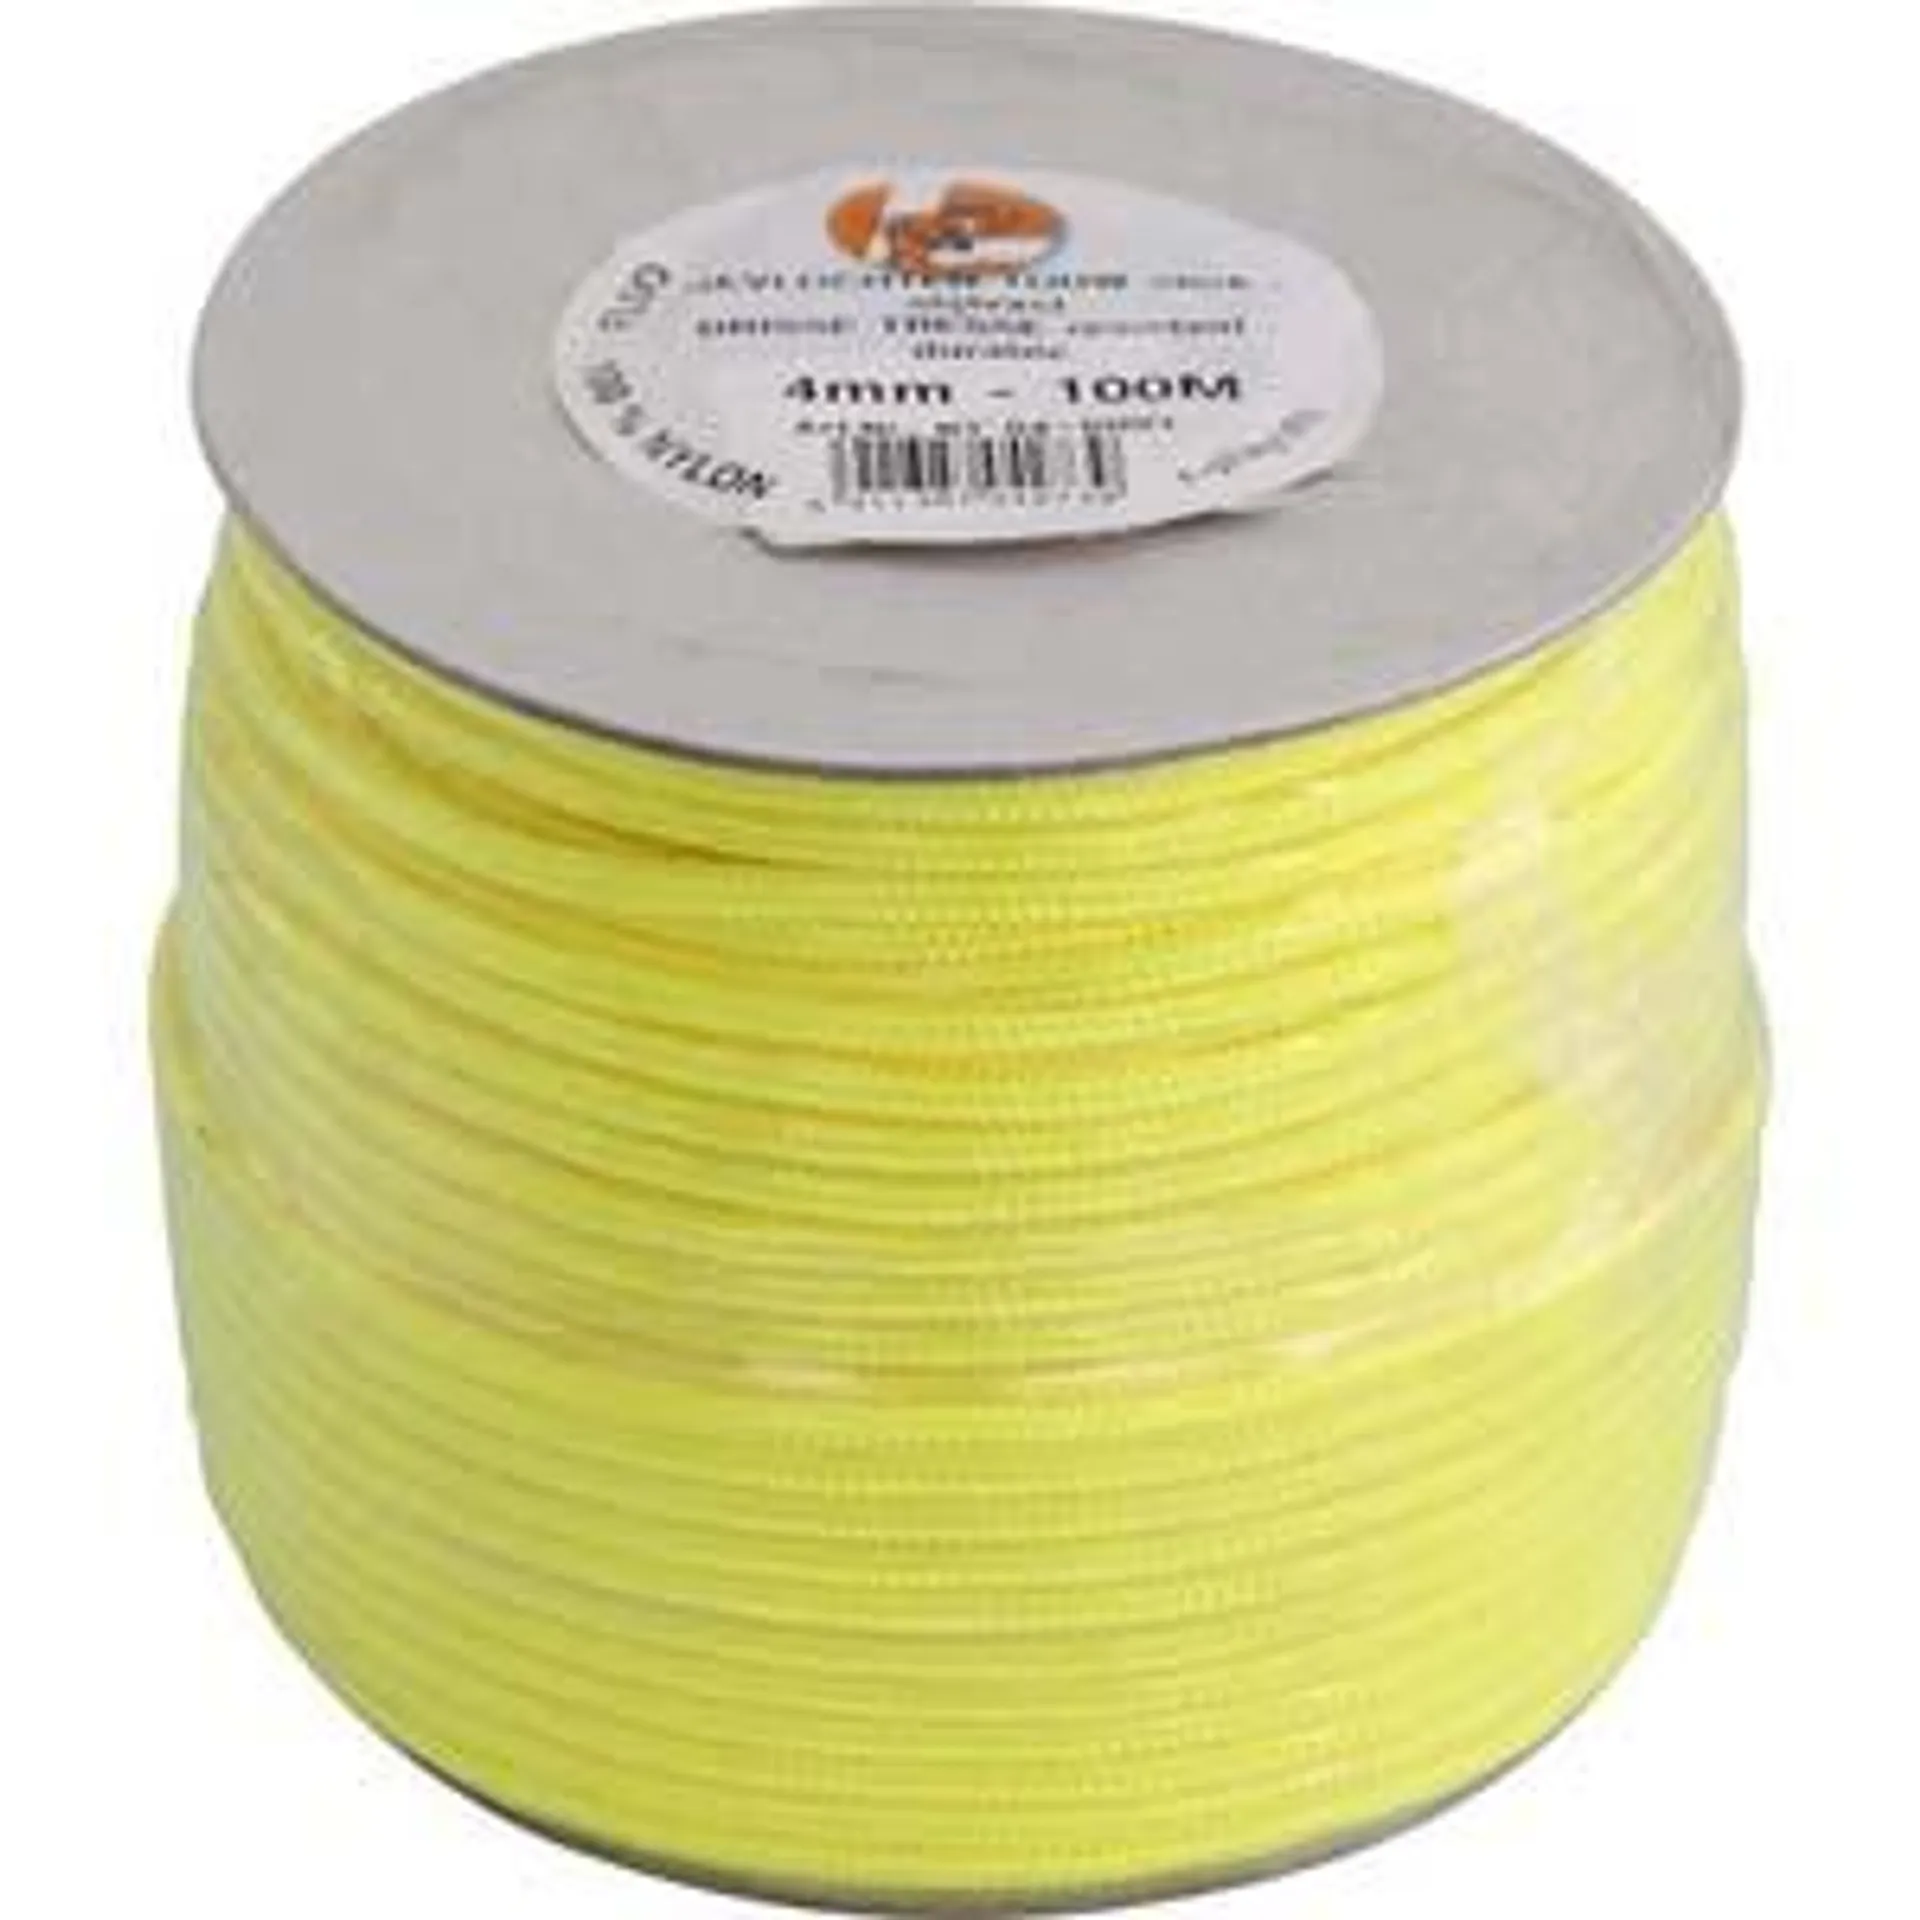 Corde nylon jaune fluo en bobine